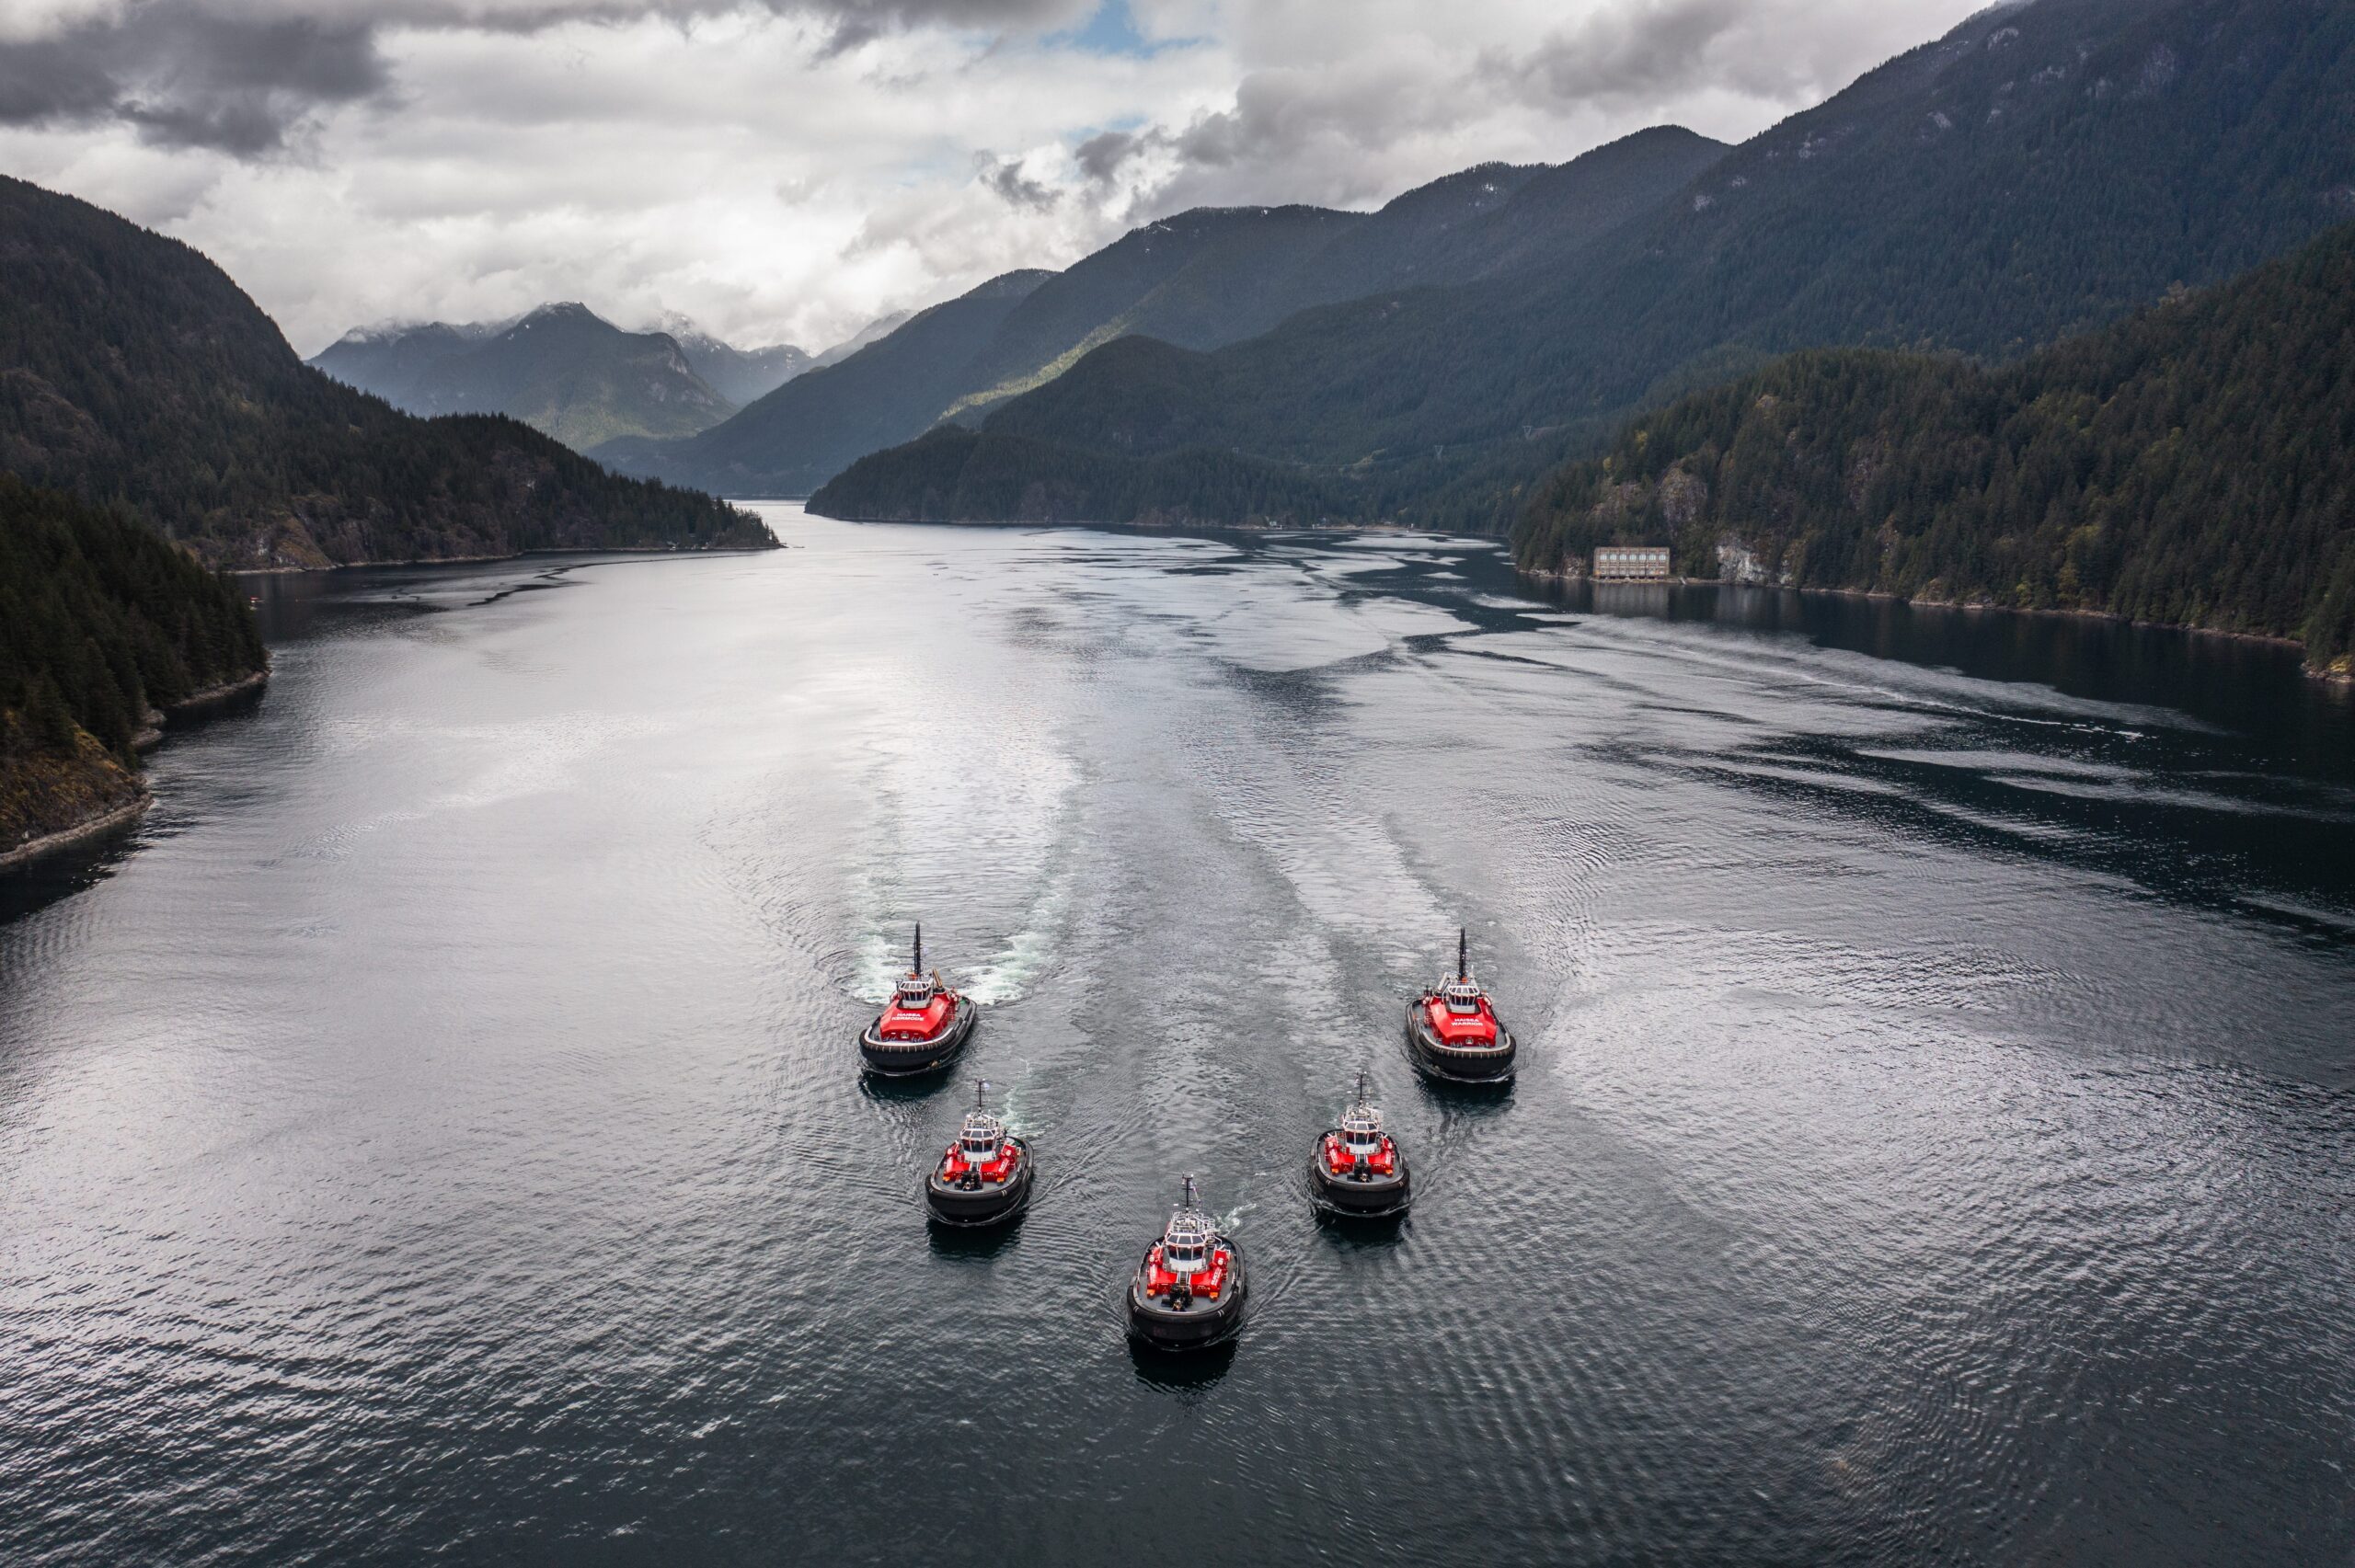 Fleet of tugboats in v formation